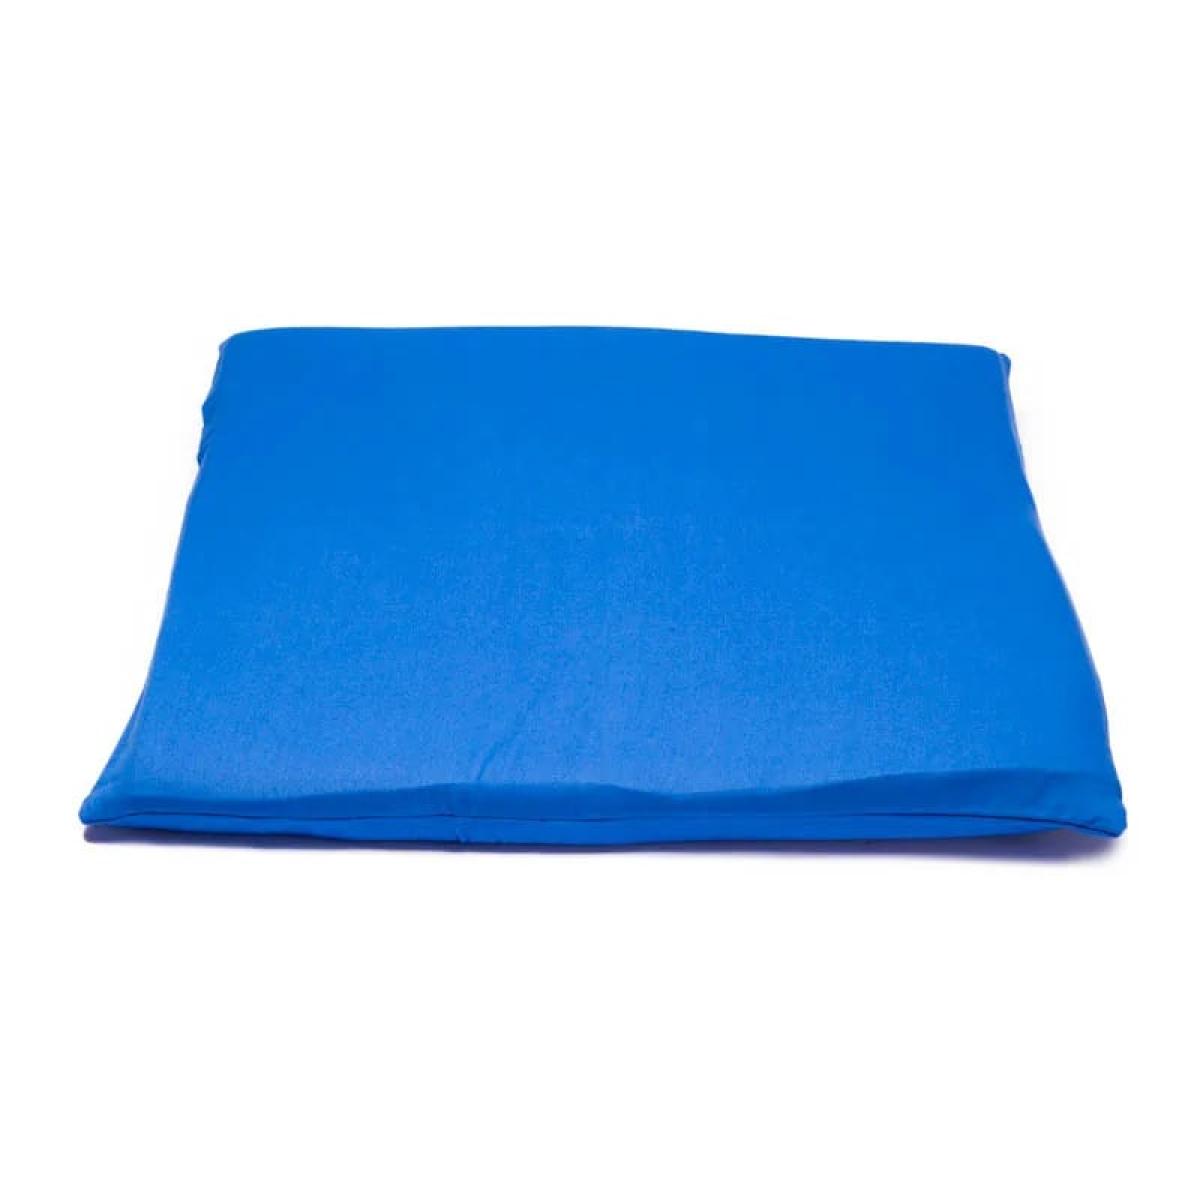 Zabuton Zen-Meditationsmatte in der Farbe Blau♥ Bio Meditationshülle von Yogi & Yogini zur Unterstützung Deiner Meditation ✅ mit Innenkissen aus Schaumstoff ✅ Top Preis & hohe Qualität✓jetzt online bestellen➤ www.bokken-shop.de